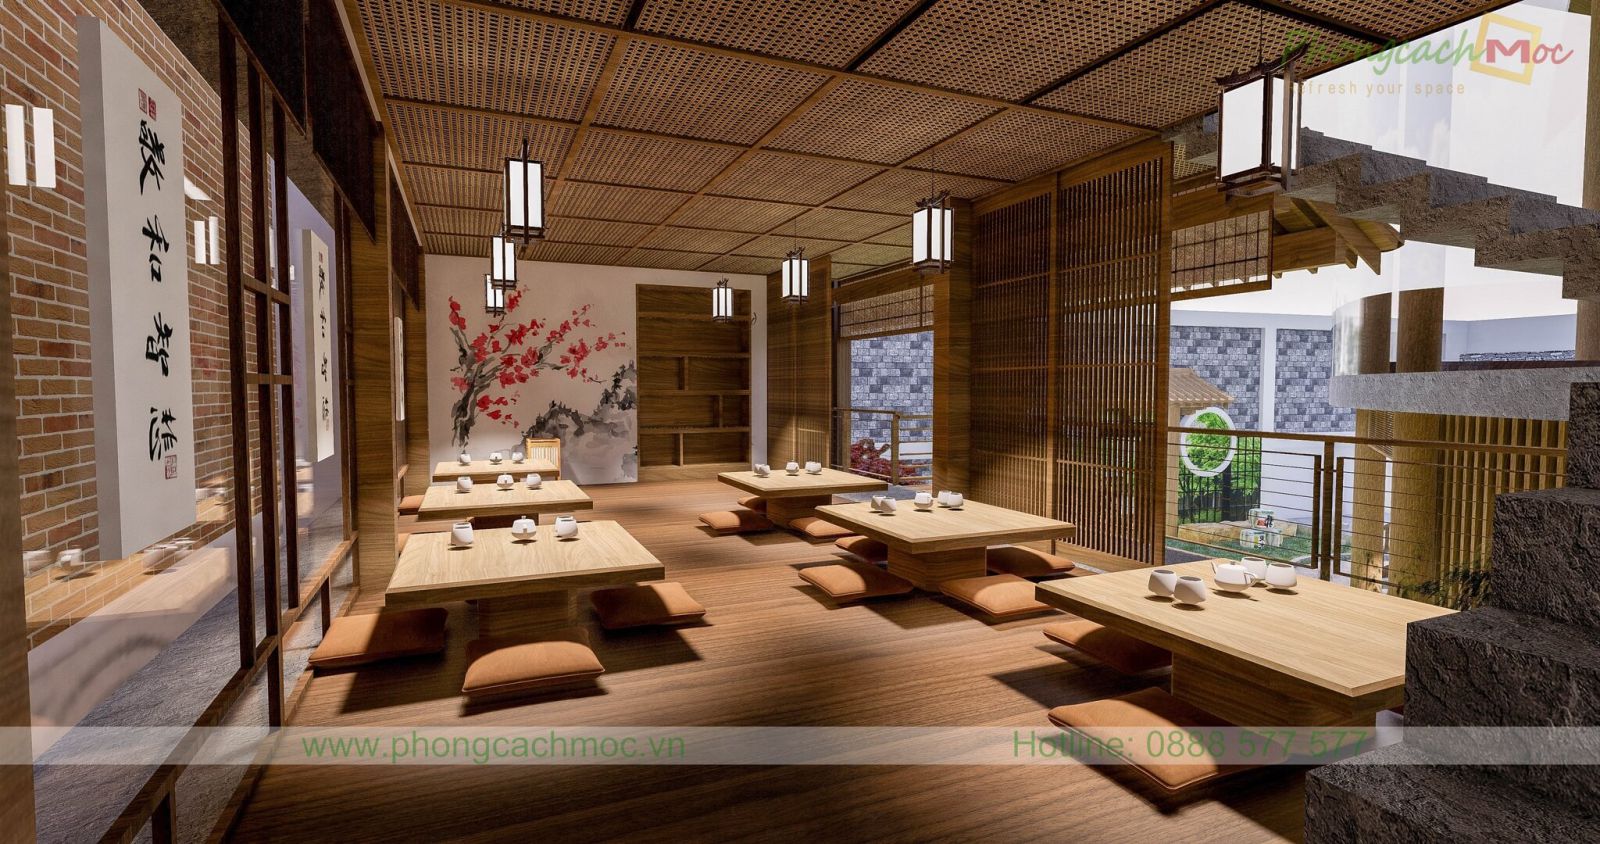 tầng 2 của nhà hàng thiết kế càng thể hiện rõ nét đặc trưng của nền văn hóa nhật bản